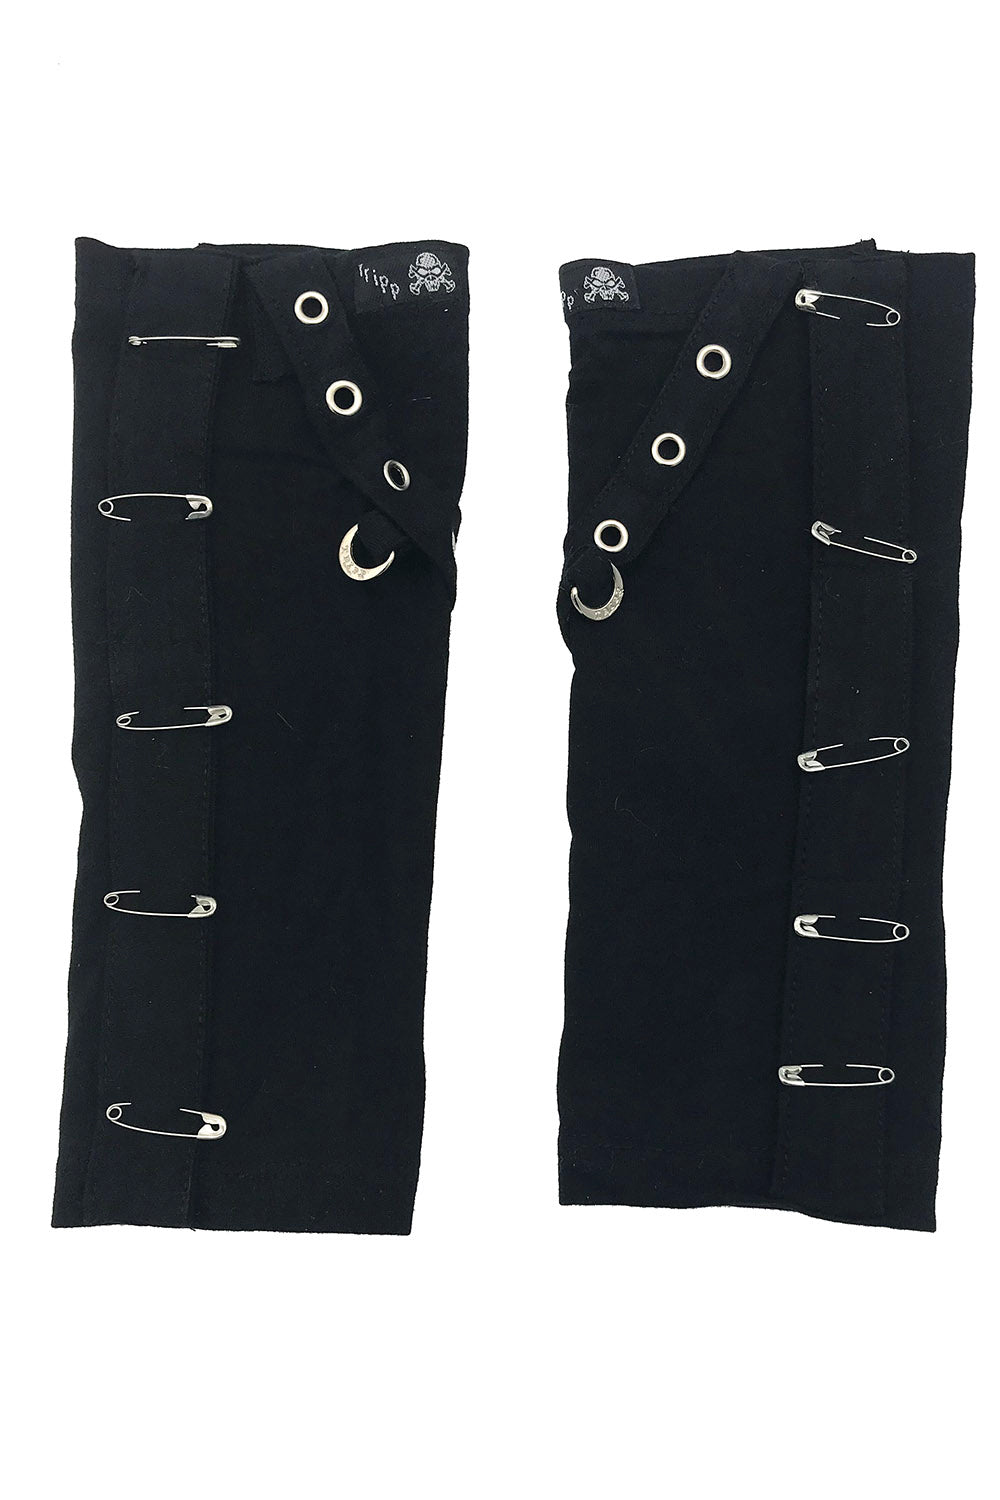 Black Safety Pins by Manhattan Wardrobe Supply